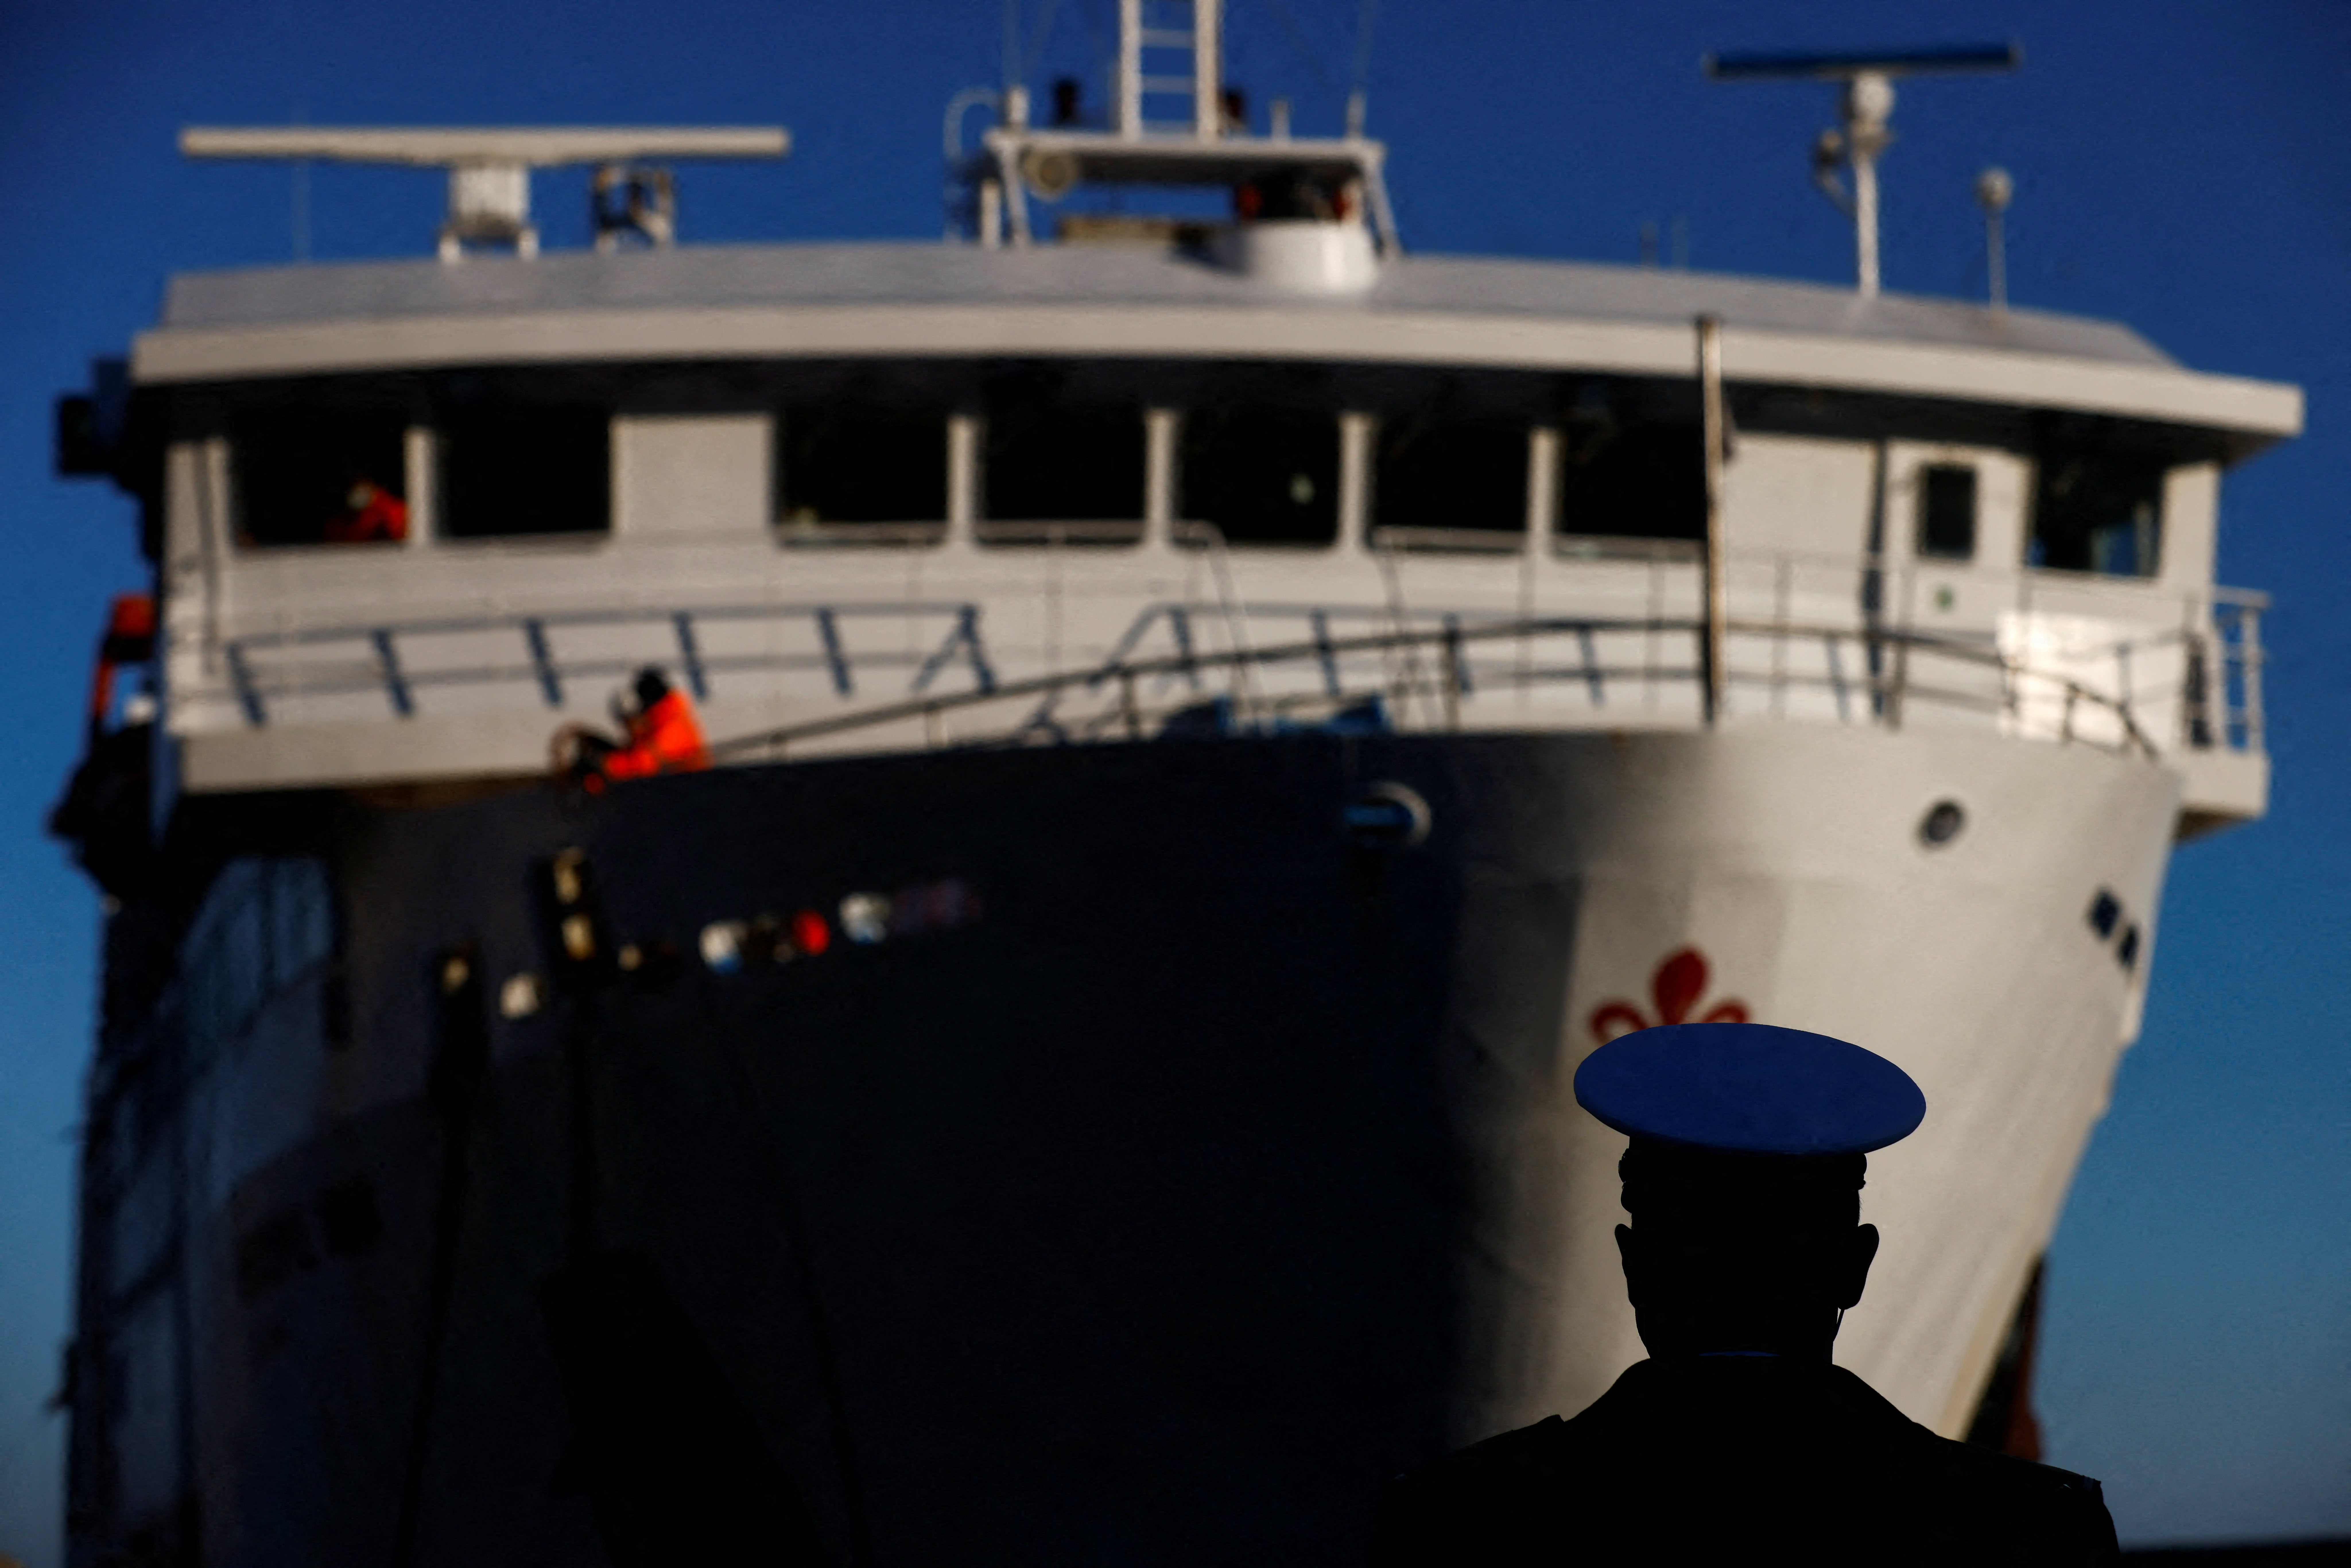 Član lučkih uprava gleda kako trajekt stiže na dan desete godišnjice brodoloma Costa Concordia u kojem su poginule 32 osobe nakon što se prevrnuo i potonuo s obale, na otoku Giglio, Italija, 13. siječnja 2022. REUTERS/Yara Nardi